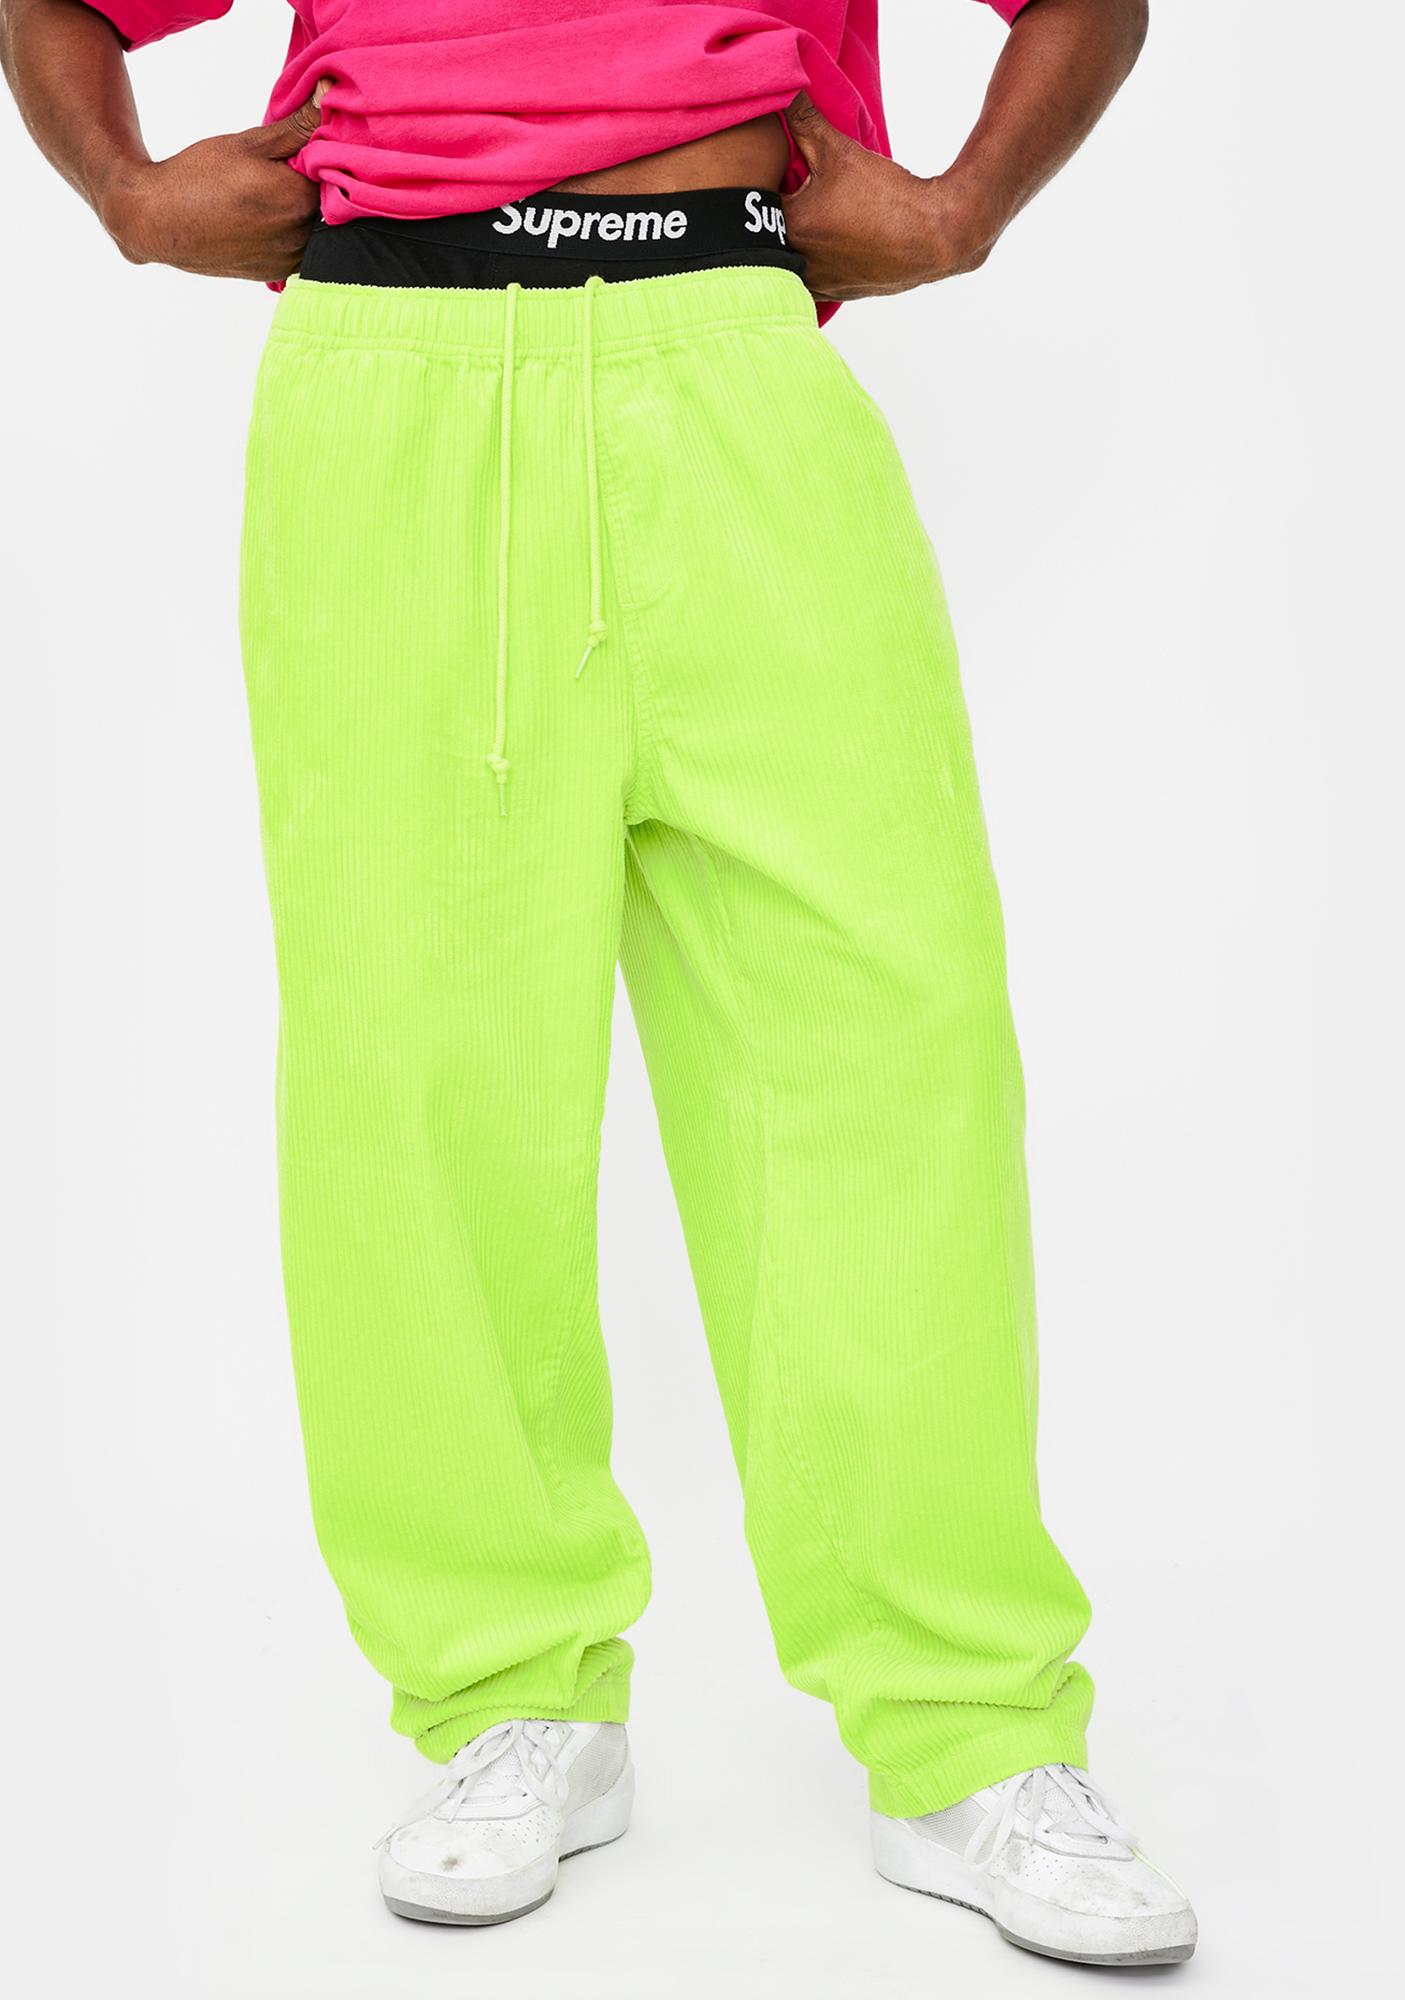 lime green corduroy pants